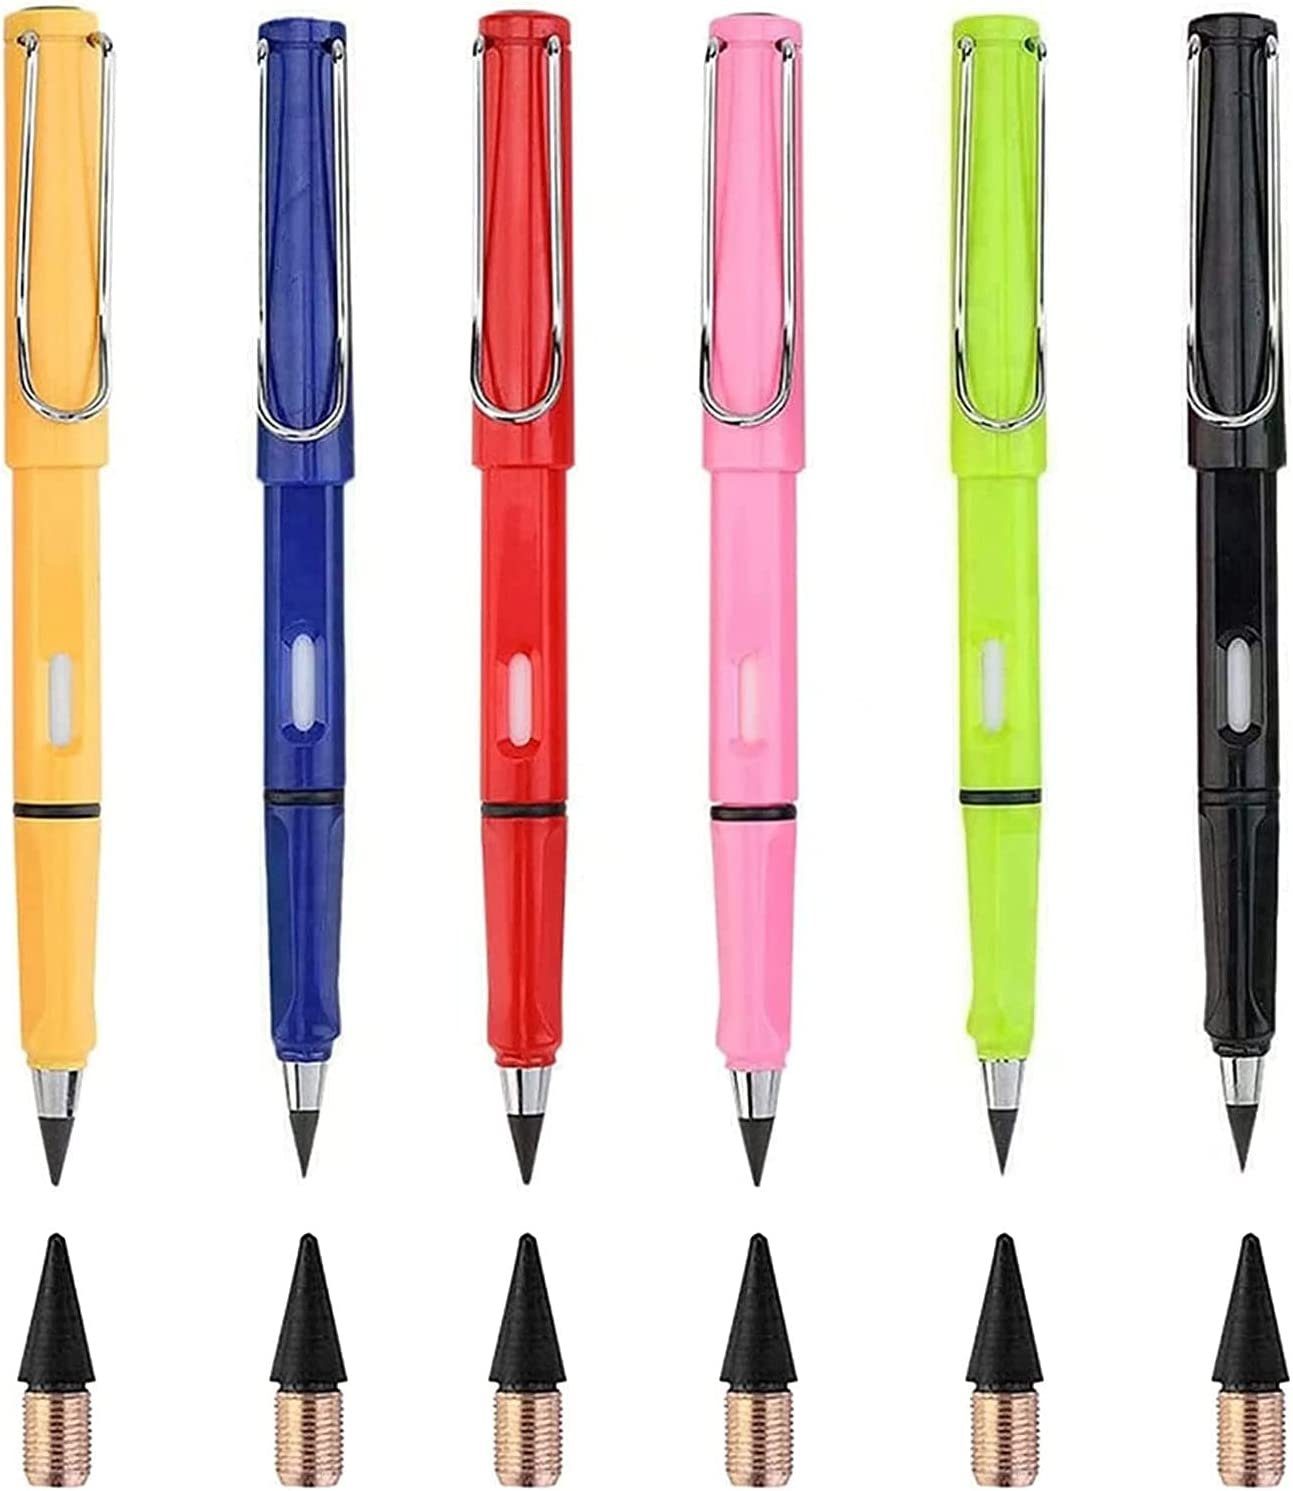 XDeer Bleistift Der neue gefragte Bleistift,Ewiger Bleistift,Tintenlose Bleistifte,Unendlicher Bleistift,Tragbarer Immerwährender Bleistift,Wiederverwendbar Tintenschreiber Aus Metall,wunderbarer bleistift für Schüler/Künstler zum Zeichnen Schreiben, (6-tlg), Dieser Bleistift kann ohne Anspitzen oder Tinte schreiben. wenn die Spitze am Papier reibt,die Legierungsmetallmoleküle sich zersetzen und auf der Papieroberfläche bleiben Farbe C